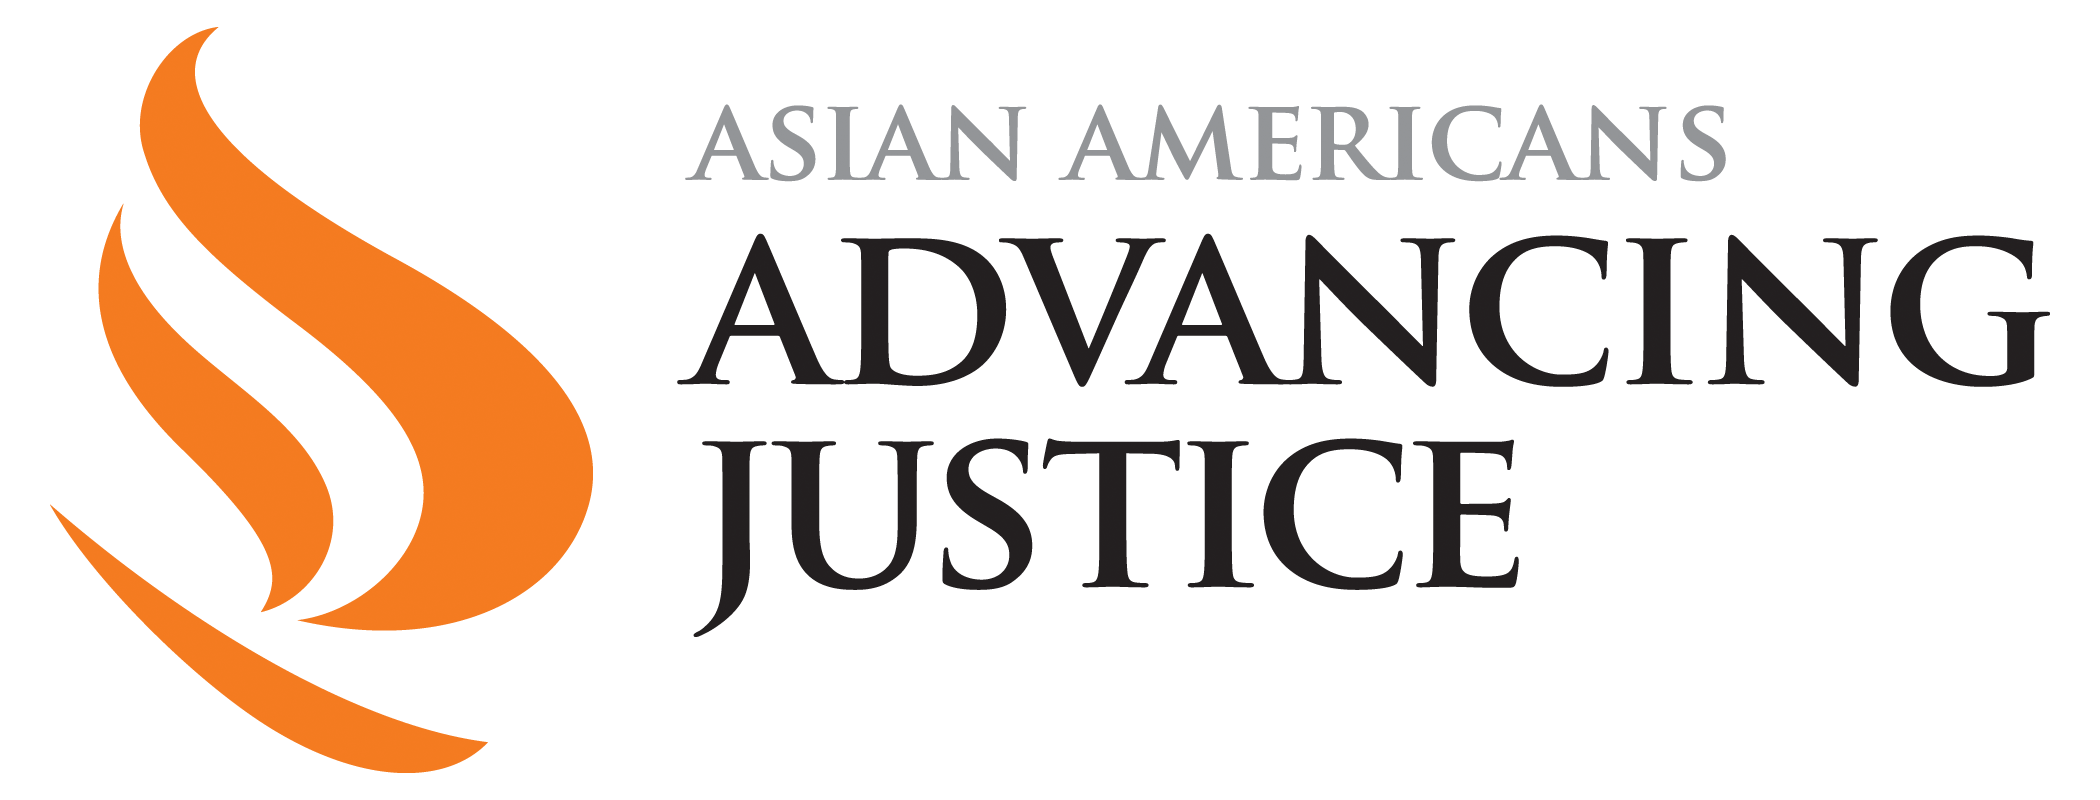 https://www.advancingjustice-aajc.org/